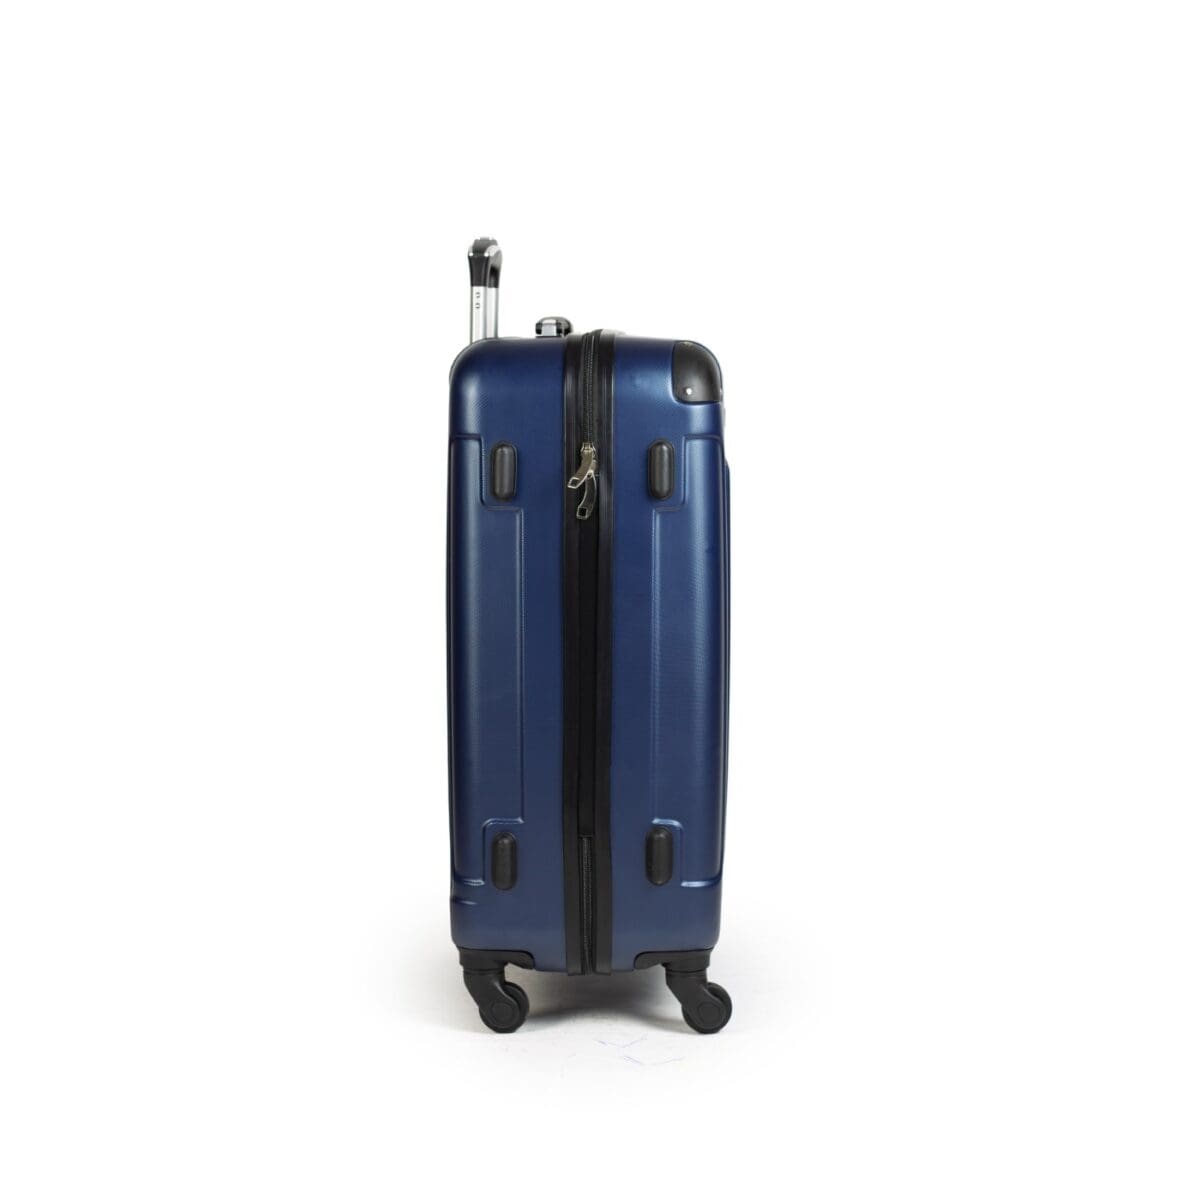 Δεξιά πλευρά βαλίτσας με πατόκουμπα σε χρώμα μπλε